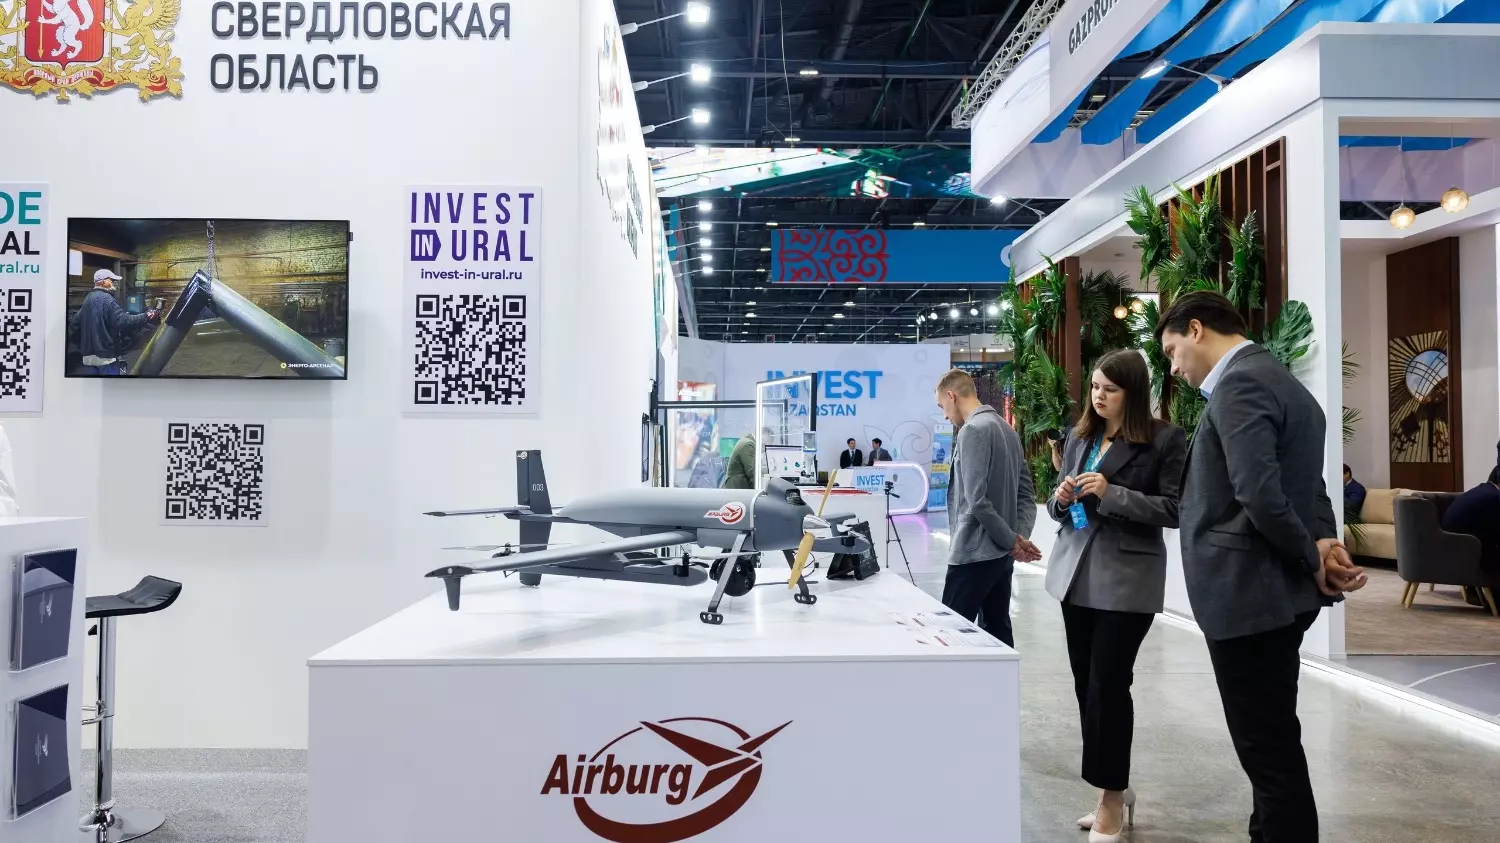 АО "ЭЙРБУРГ" стало участником международной промышленной выставки "Иннопром" и представили беспилотный летательный аппарат "Пчёлка".